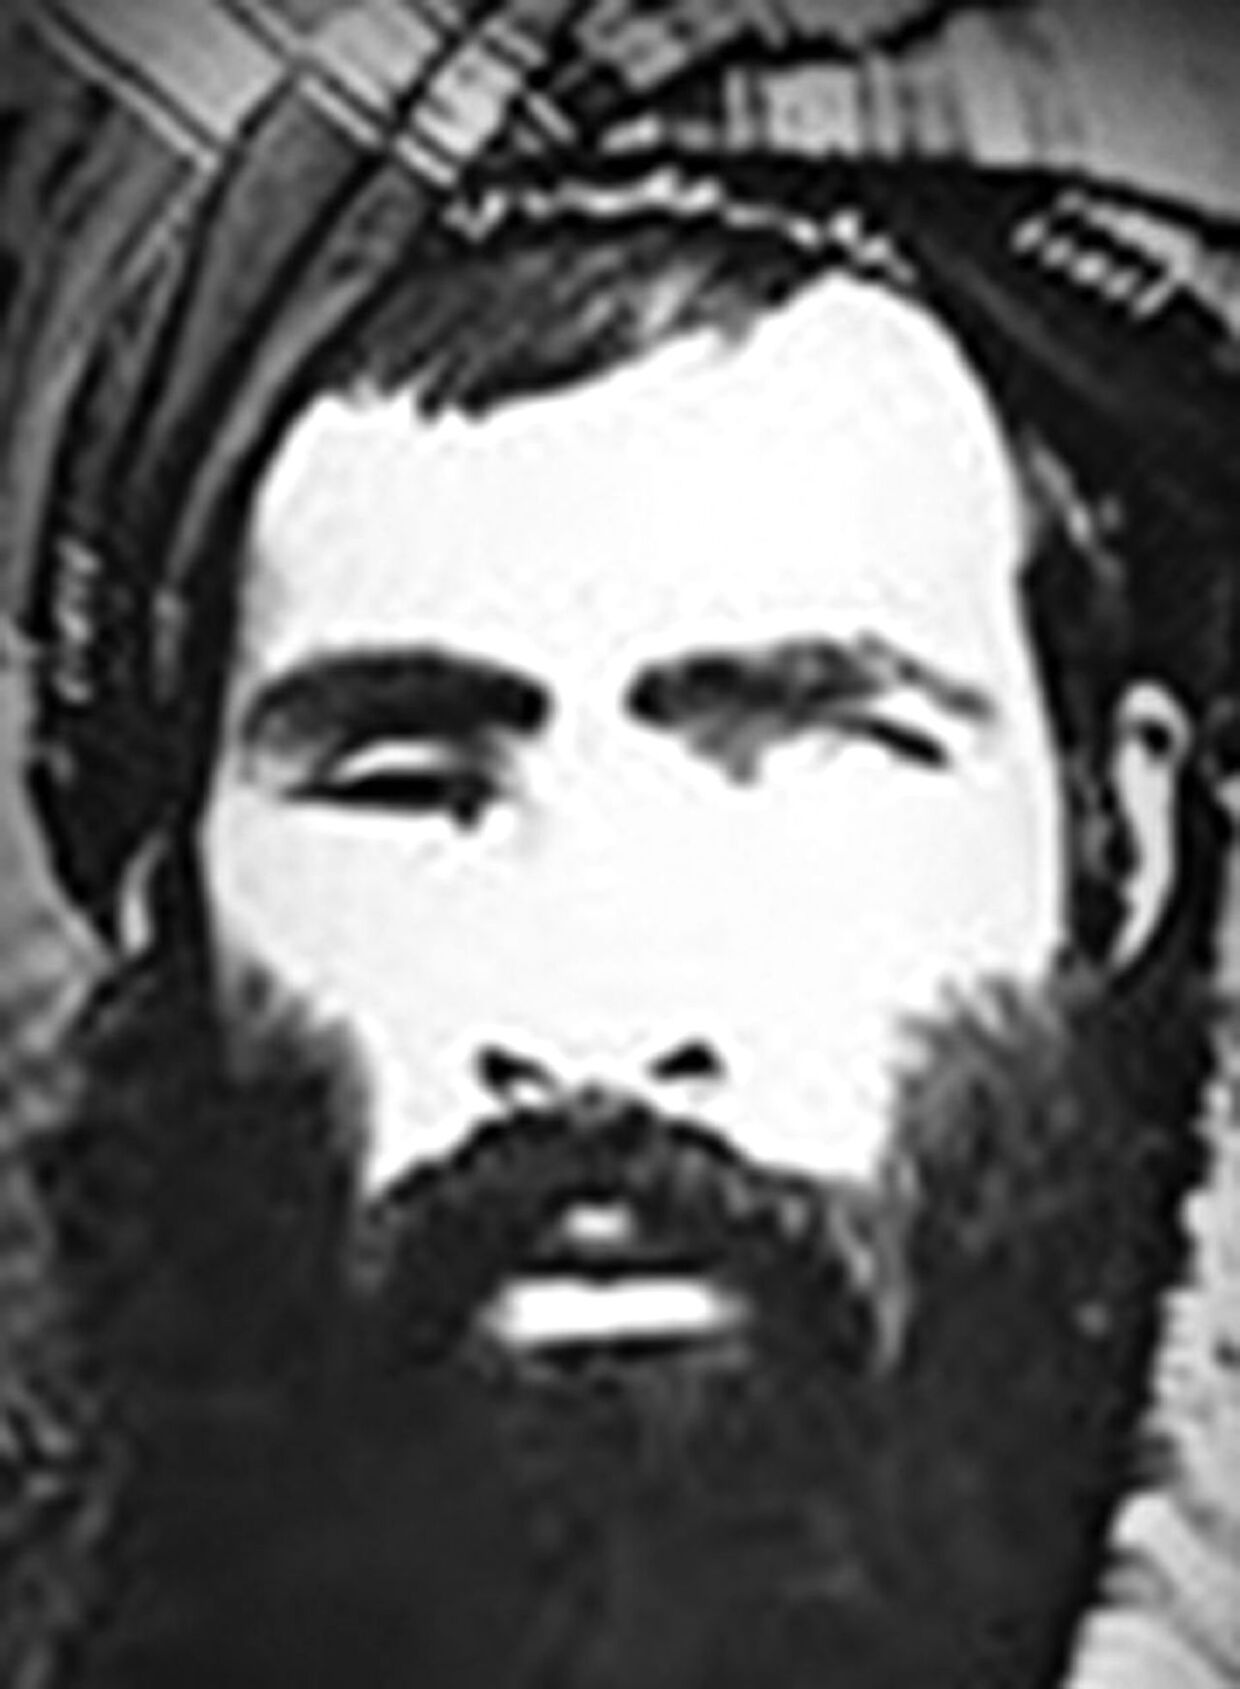 Der findes få billeder af den enøjede leder Mullah Omar, hvis nøjagtige fødselsdato er offentligheden ukendt.